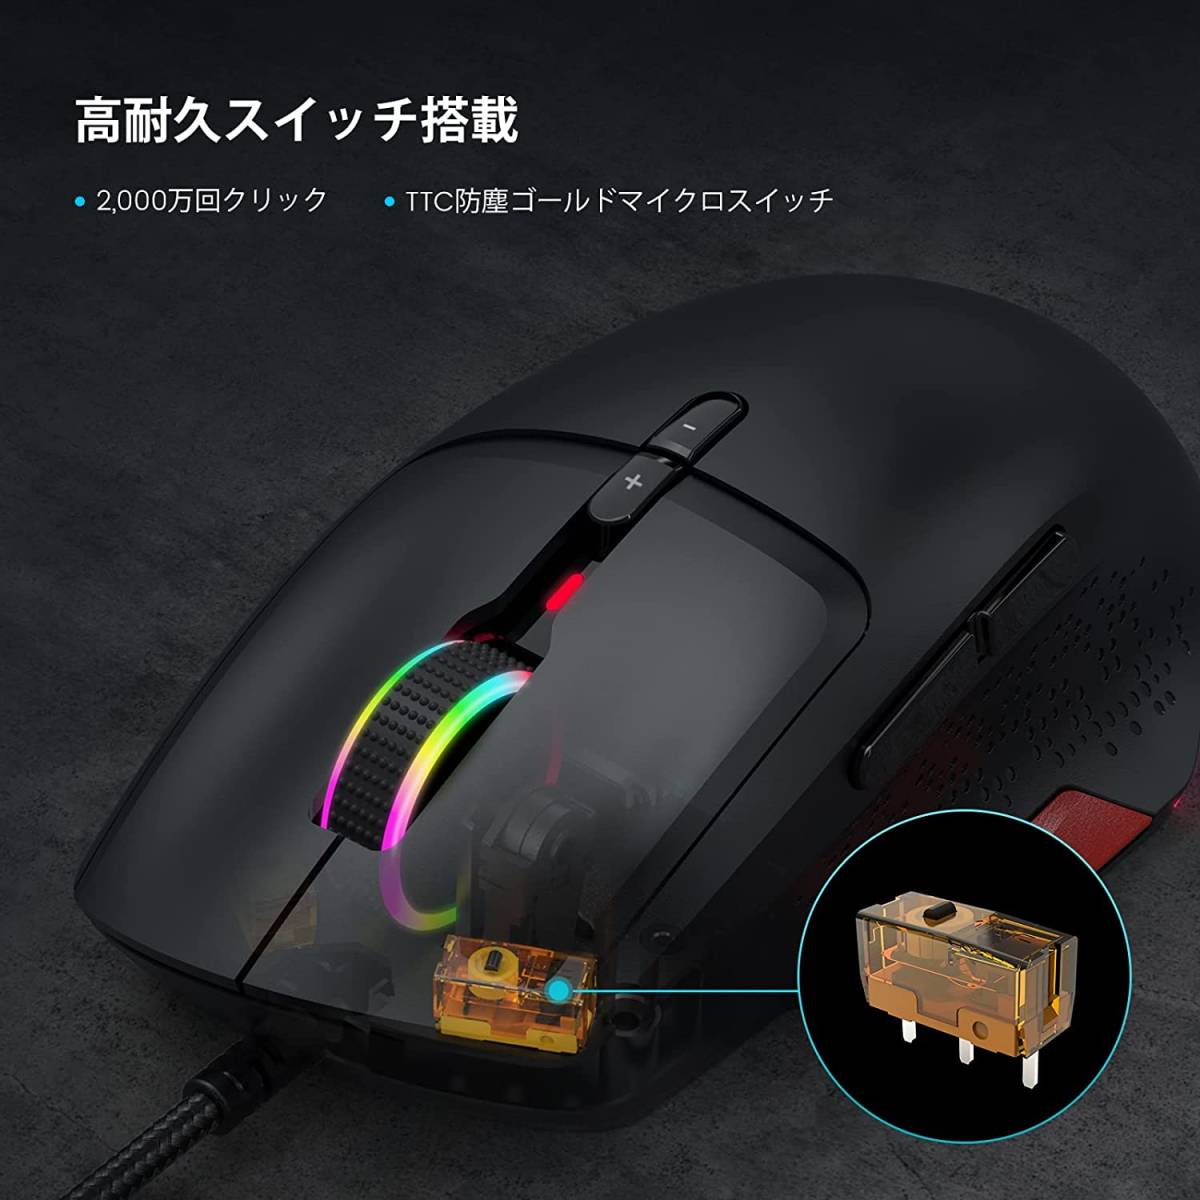 ゲーミングマウス 有線 12000dpi USB接続 光学式 マウス DPIボタン付き ゲーム用マウス RGBライティング 9個プログラムボタン 超高耐久